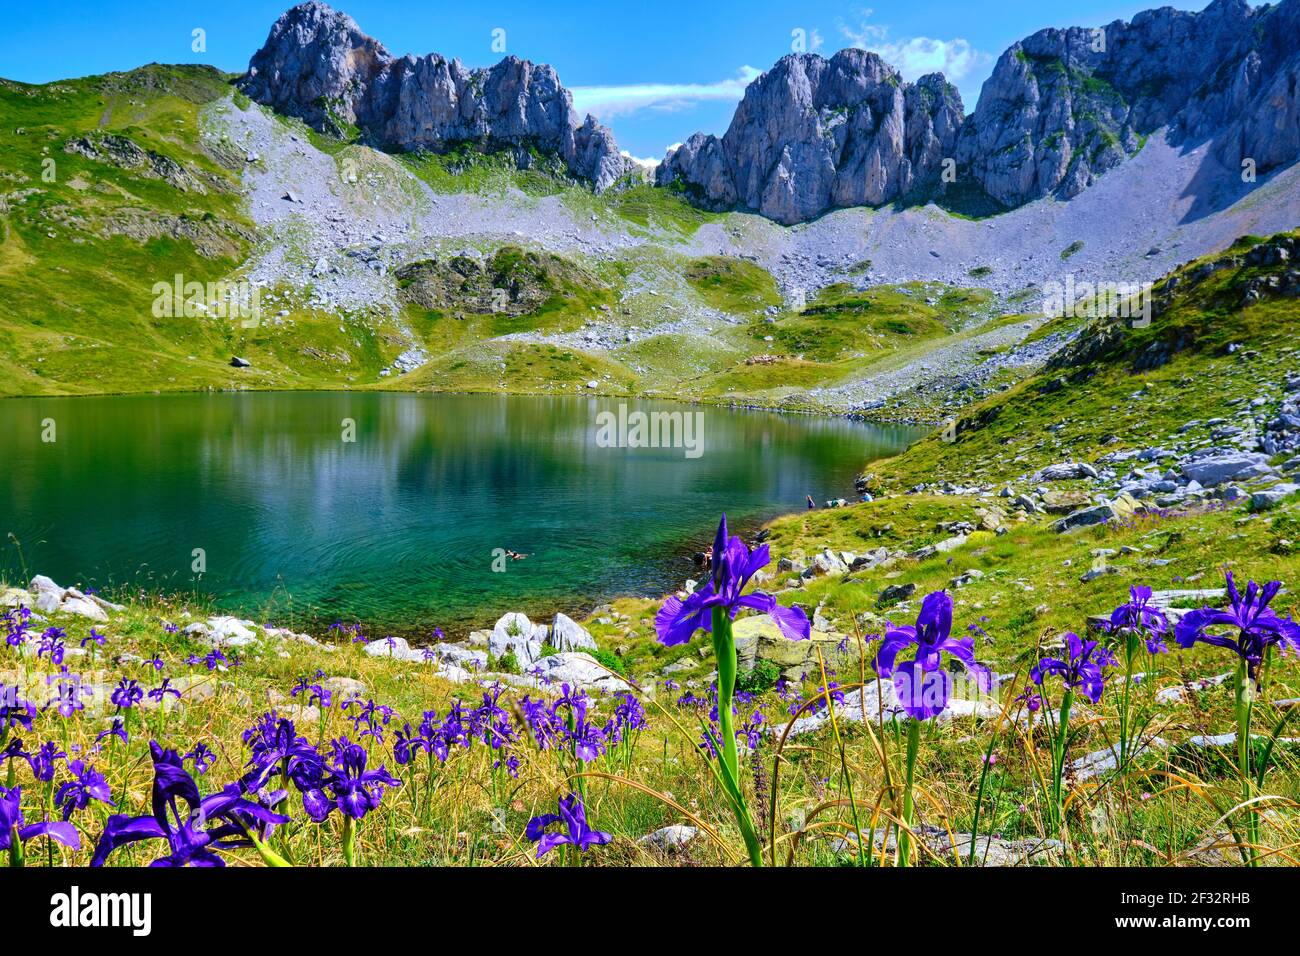 English iris flowers (Iris latifolia) and mountain glaciar lake. Ibon de Acherito route. Valles Occidentales Natural Park. Huesca, Aragon, Spain, Euro Stock Photo